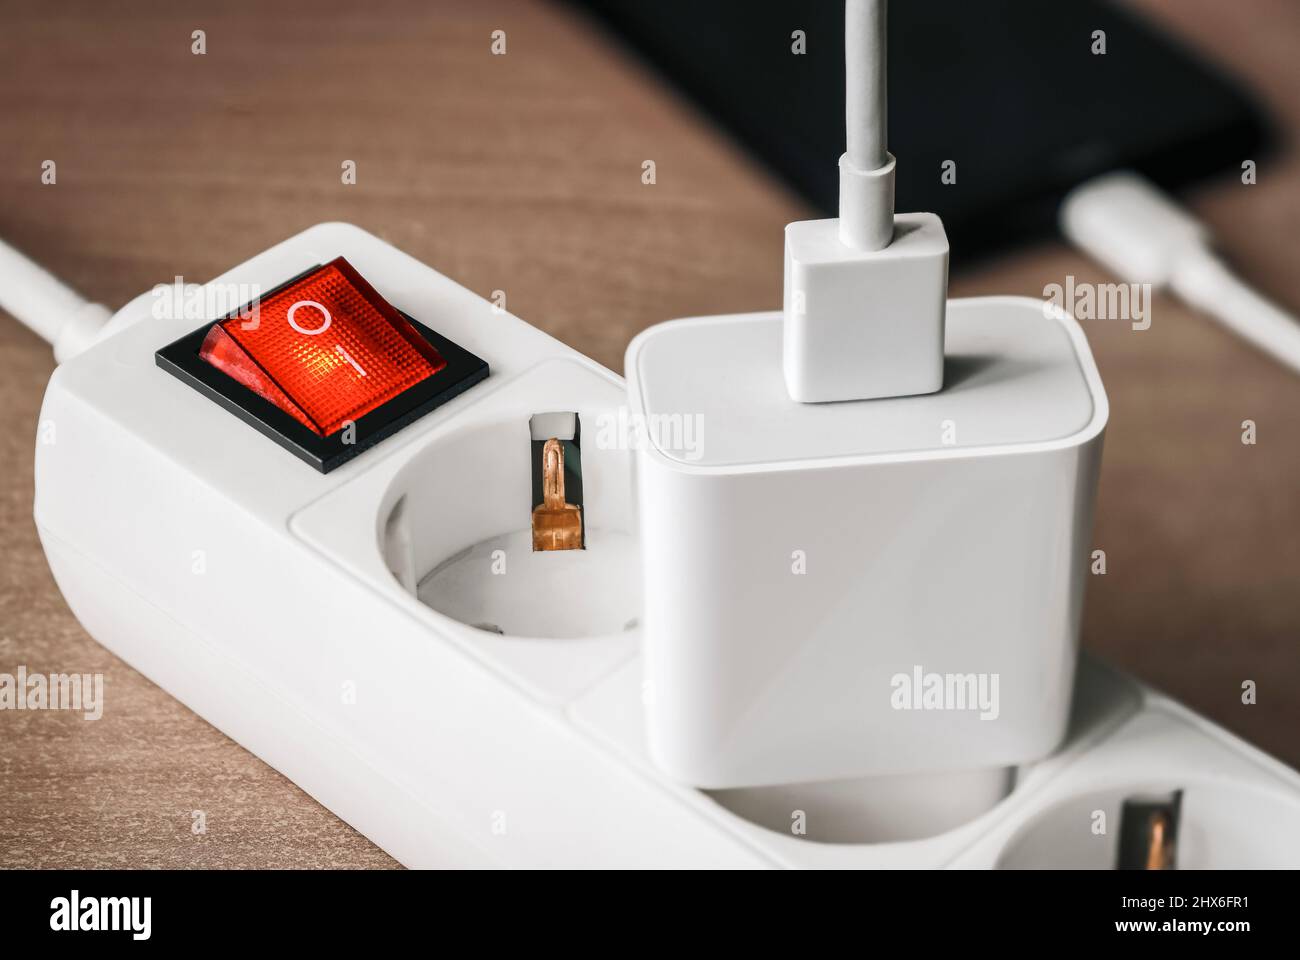 Un adattatore per caricabatterie con un cavo USB collegato a un alimentatore con un interruttore rosso per la ricarica di uno smartphone. Foto Stock